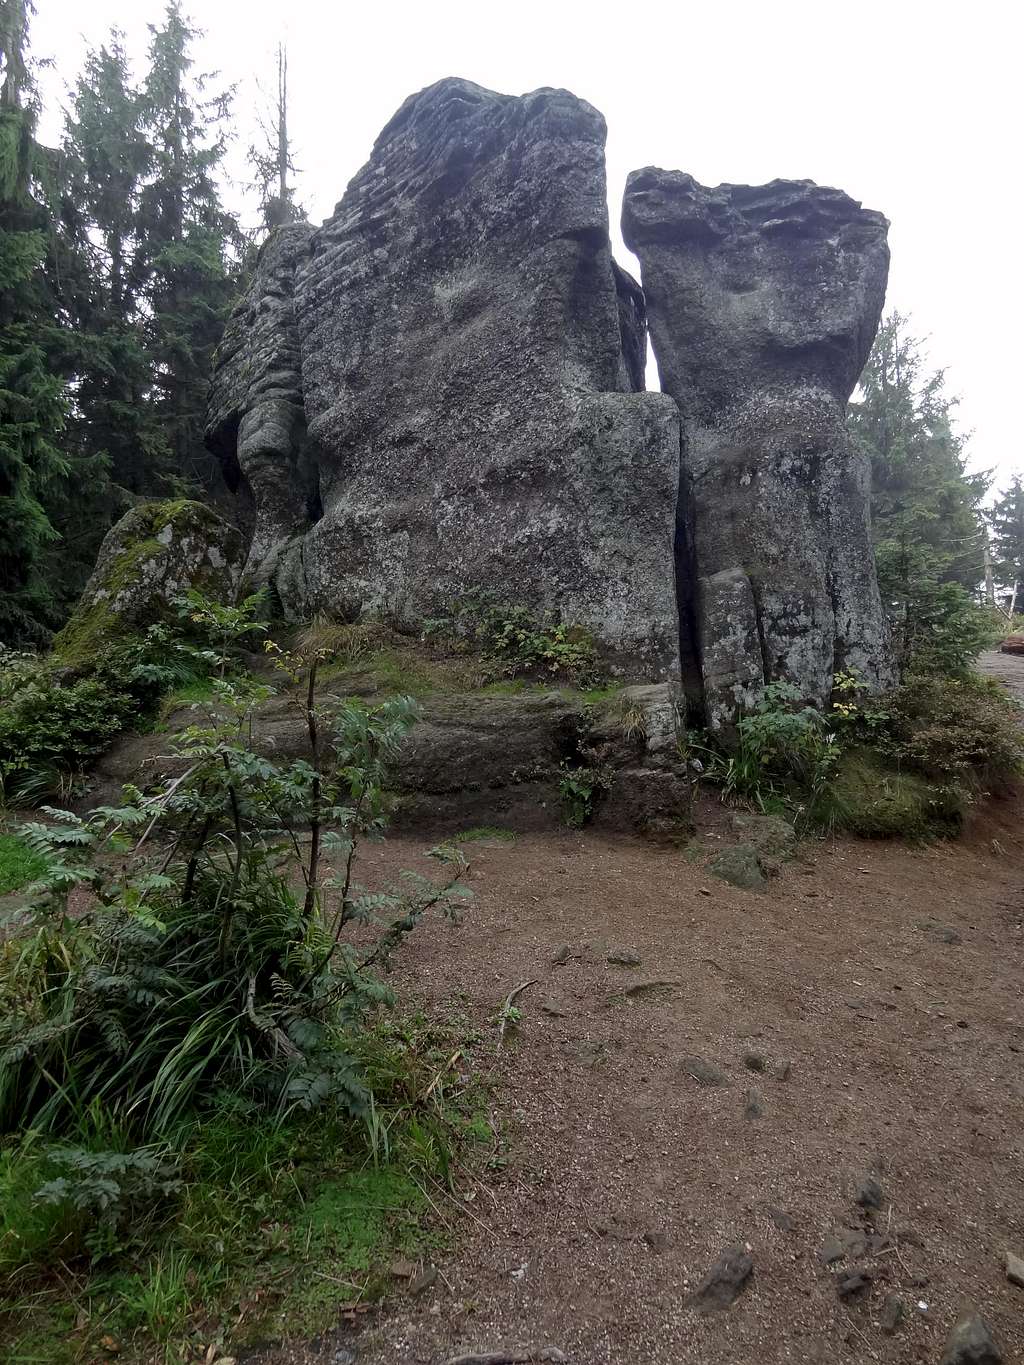 Malinowa Skała, bizarre-shaped sandstone outcrops